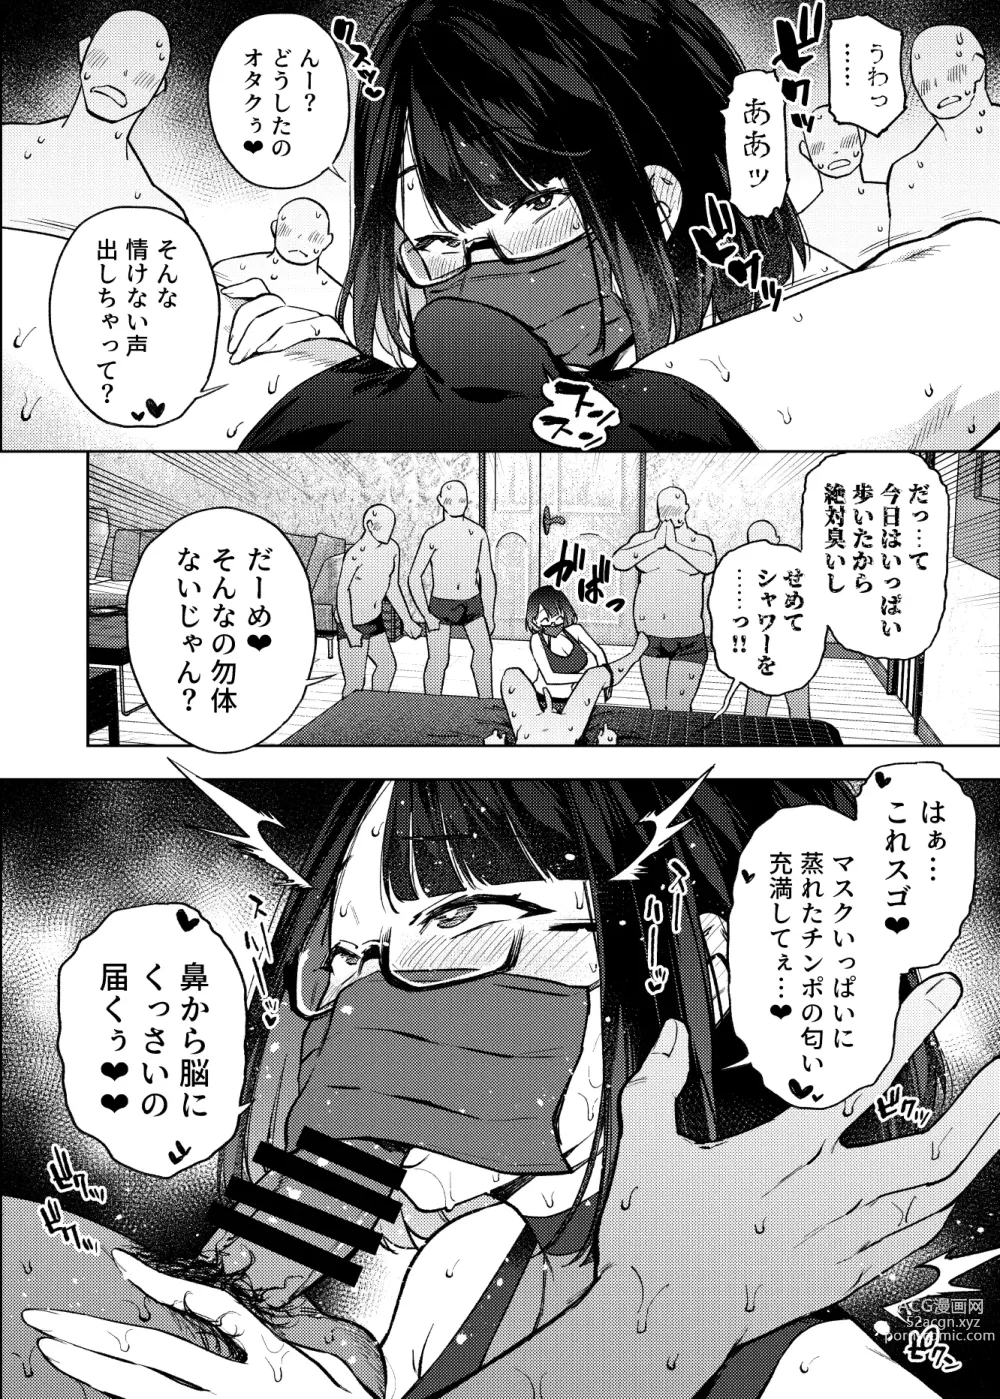 Page 7 of doujinshi JK Haishinsha desu ga Otaku to Pakoccha Dame nan desu ka?